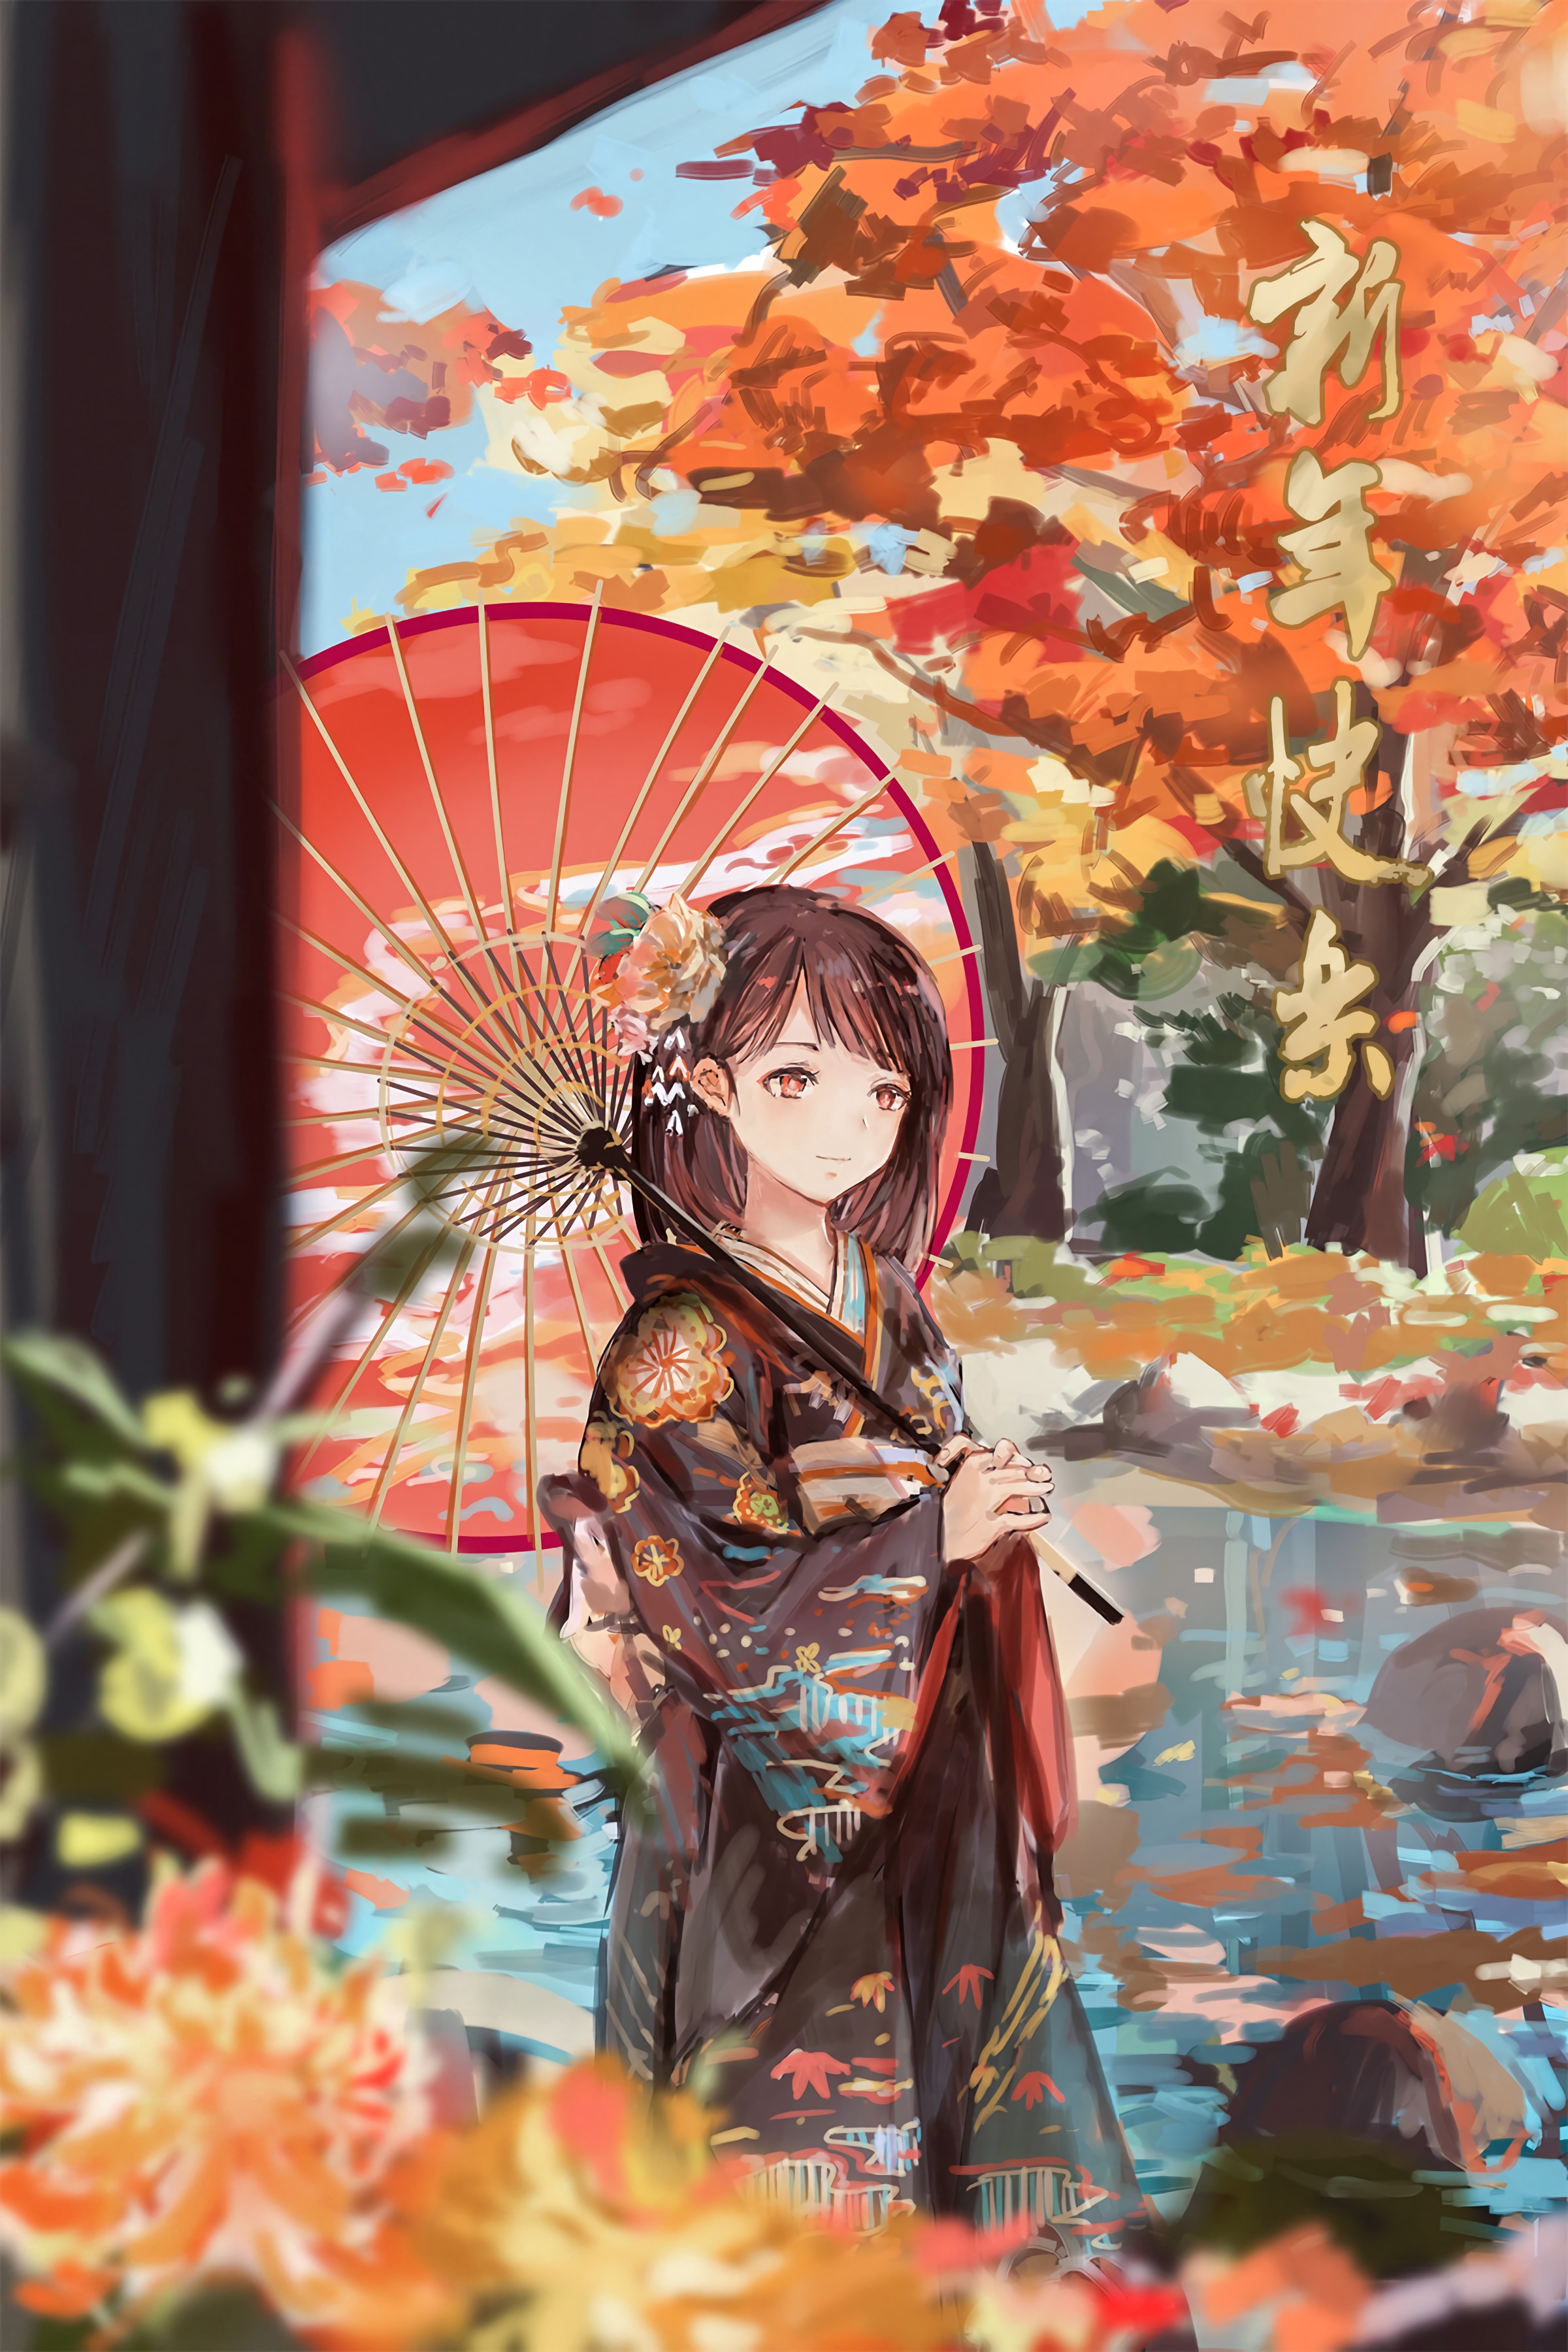 kimono, girl, anime, autumn, garden, umbrella